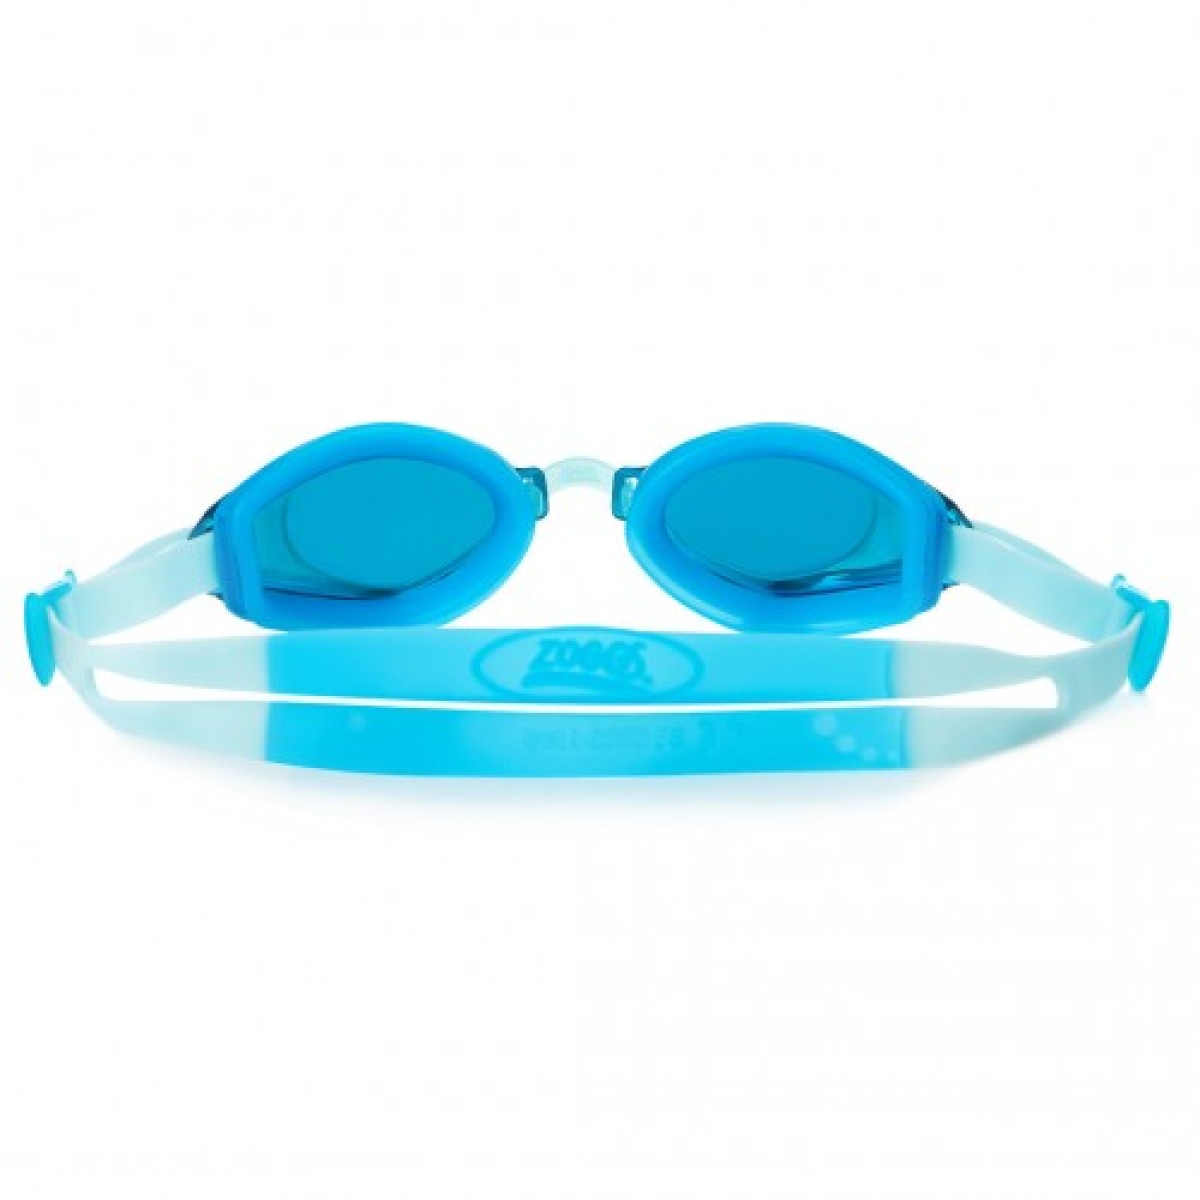 Swimming goggles Endura Mirror blue/silver ZOGGS - view 4